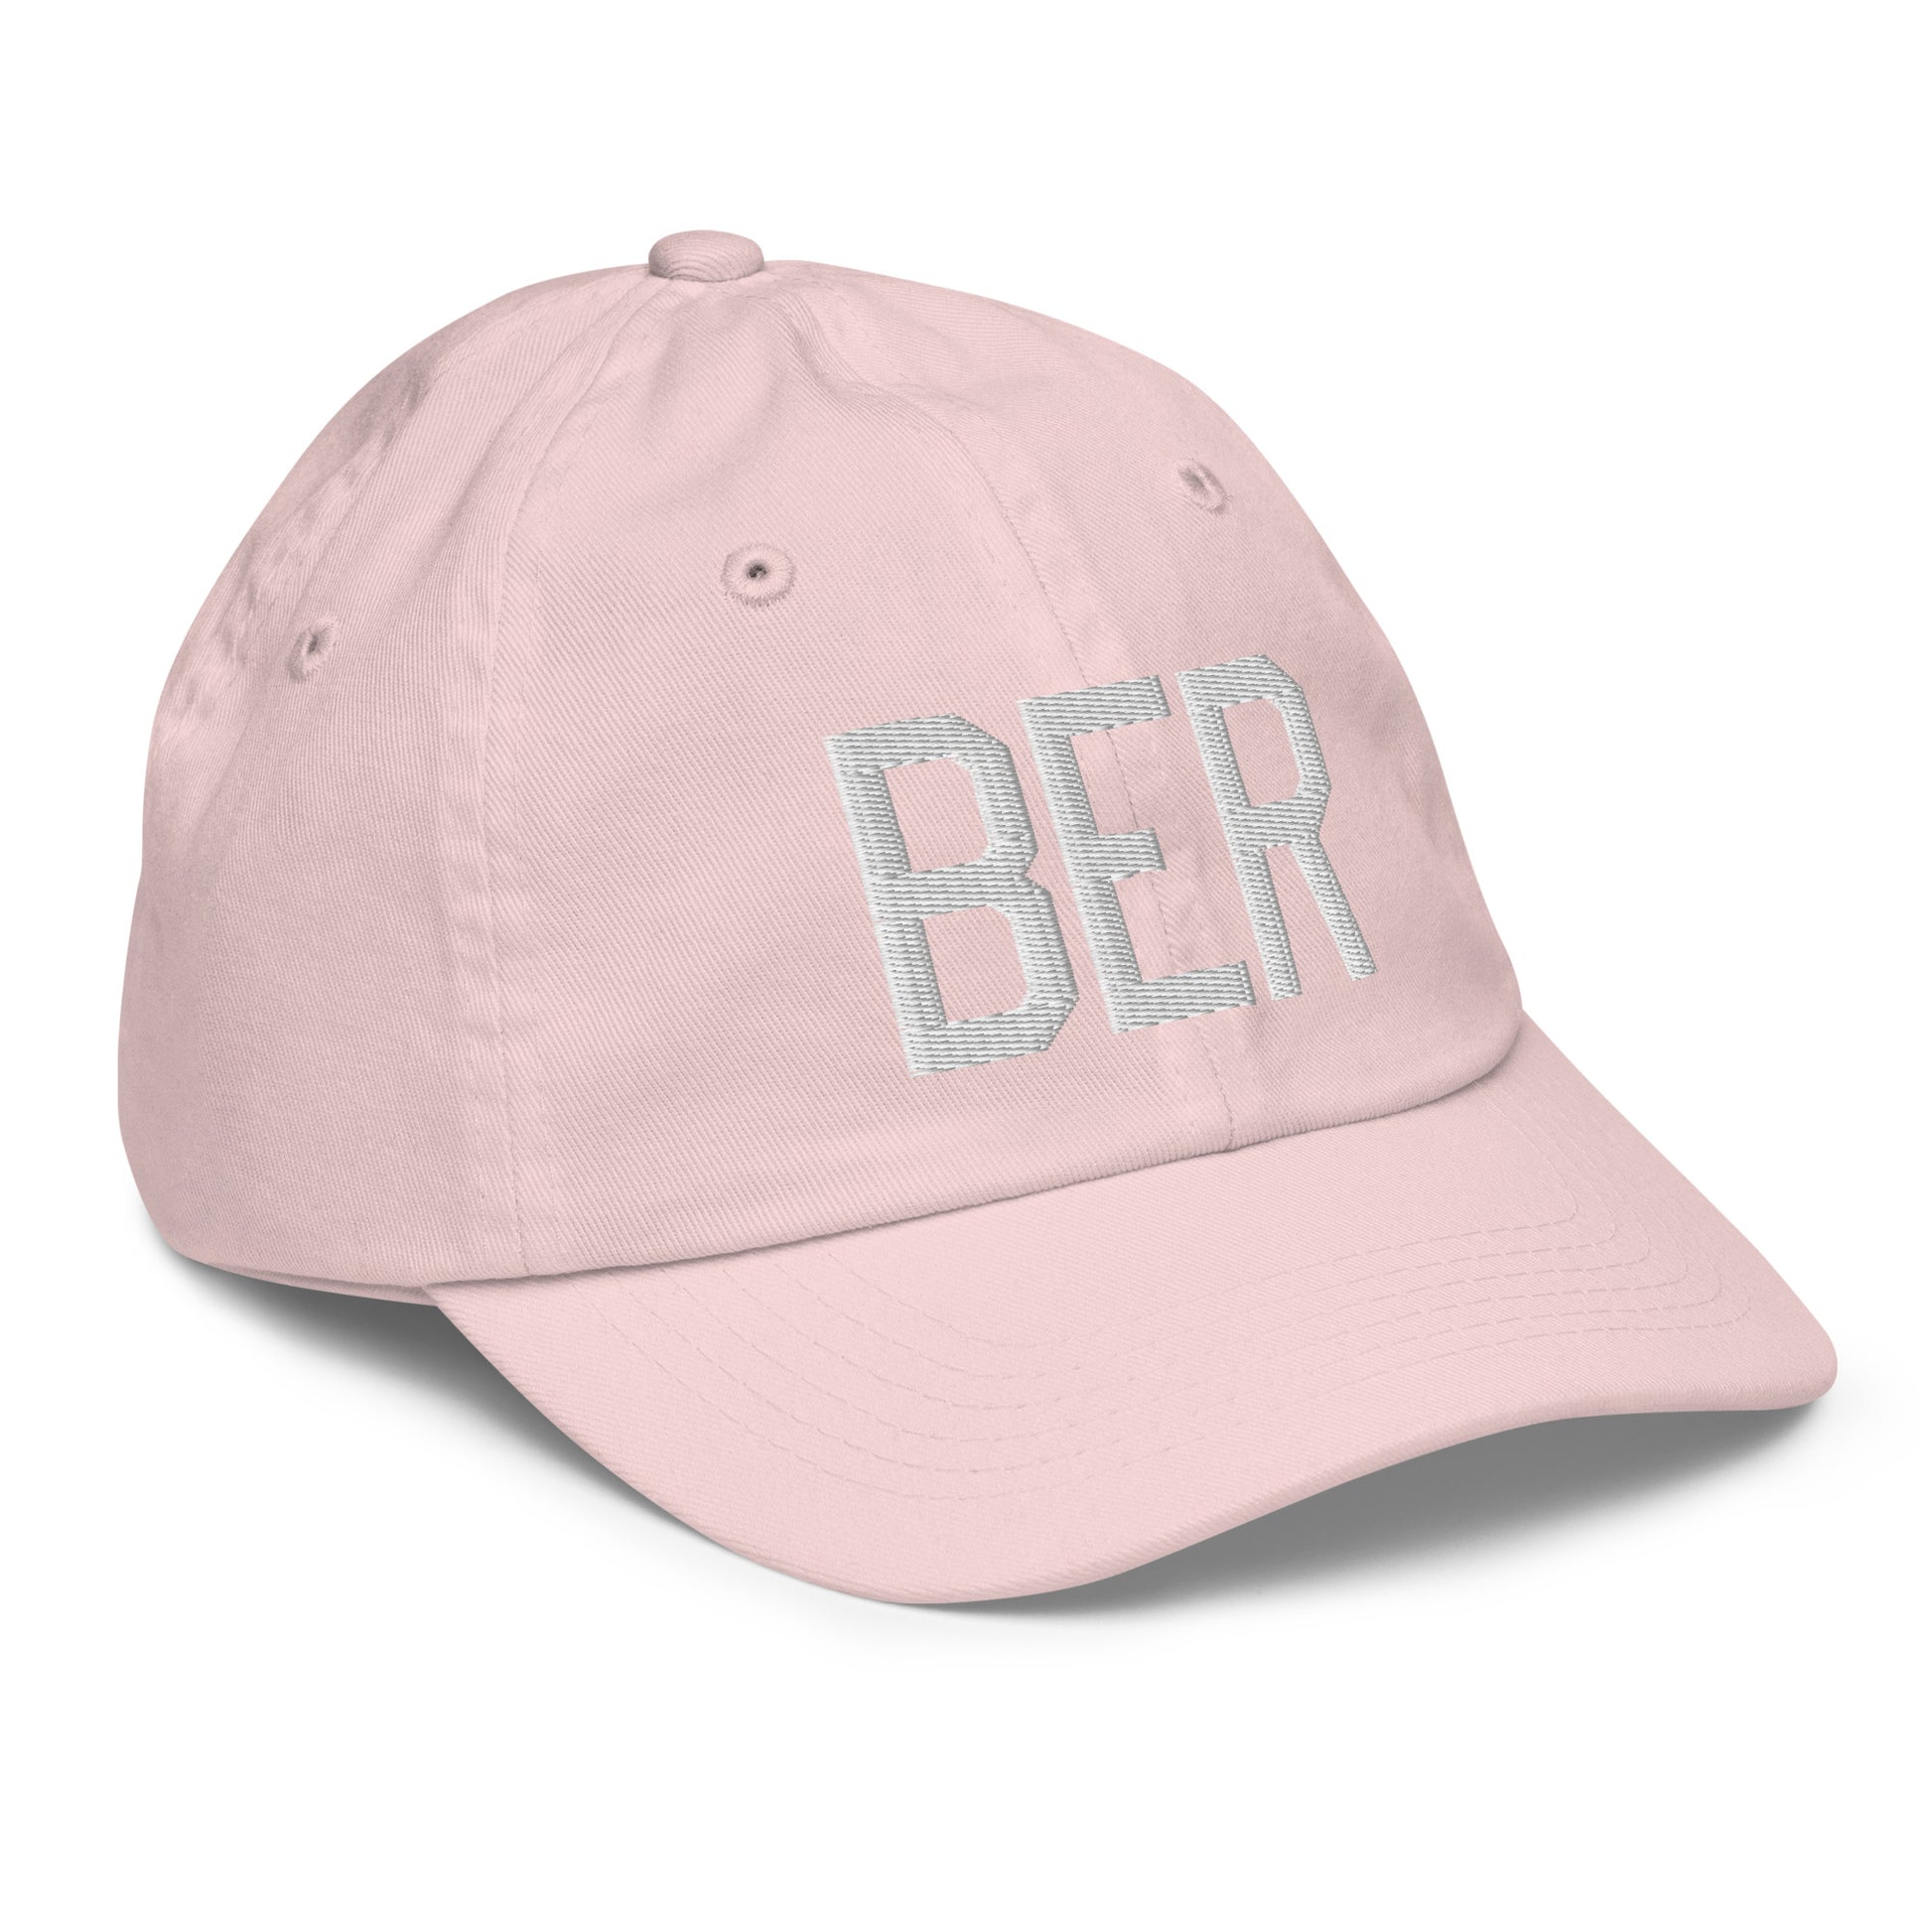 Airport Code Kid's Baseball Cap - White • BER Berlin • YHM Designs - Image 32